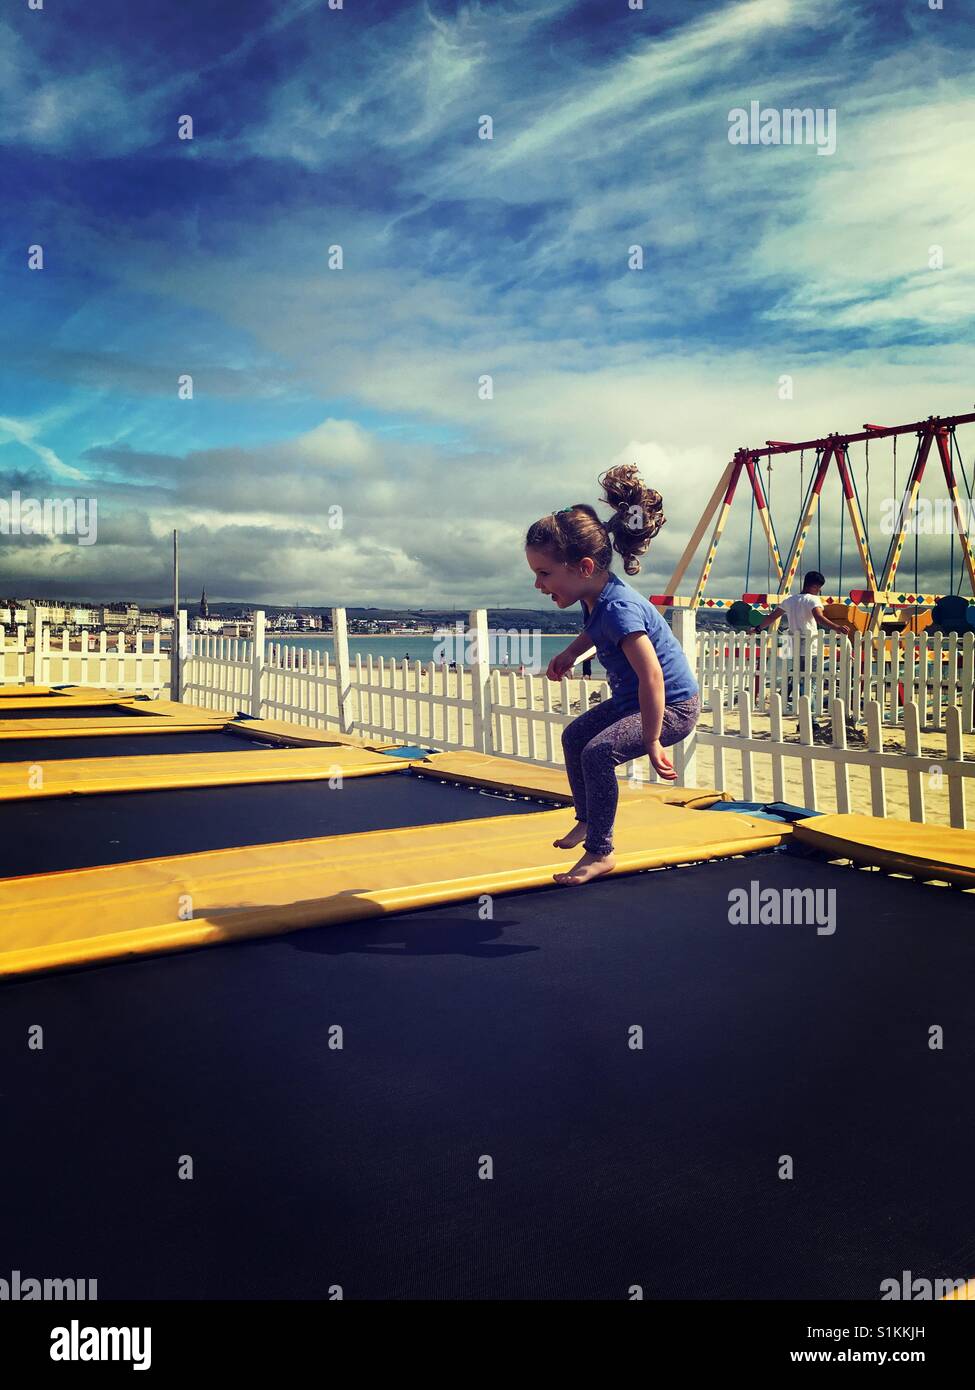 Little girl on trampoline by seaside Stock Photo